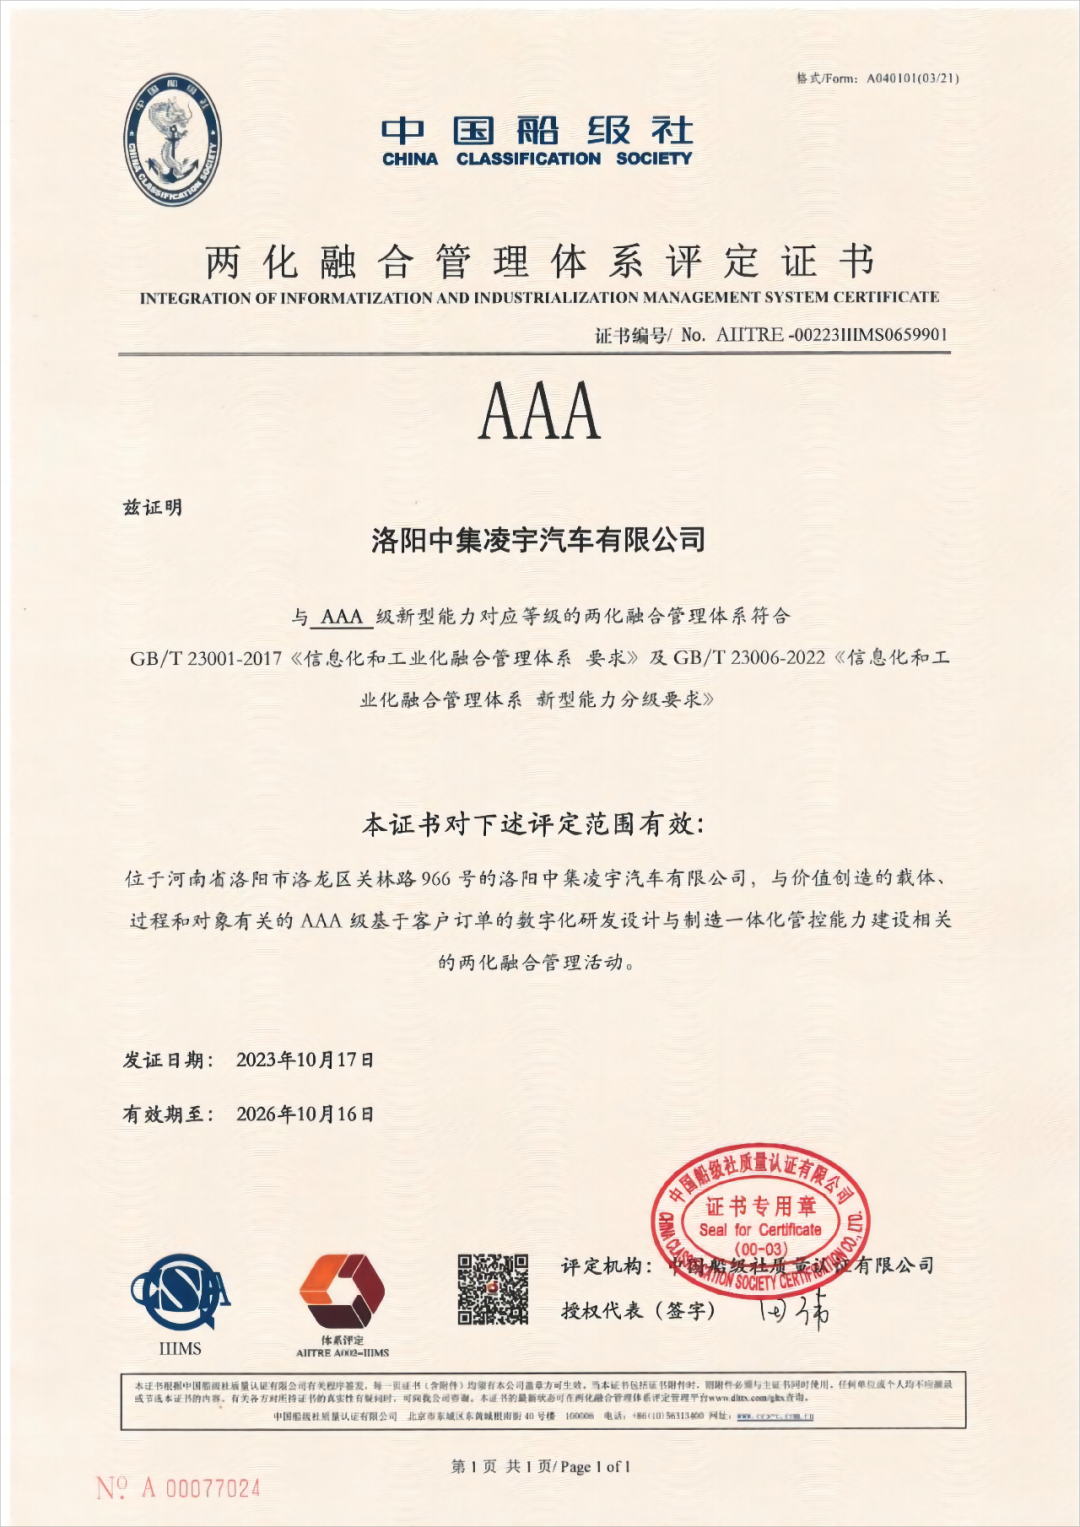 中集凌宇获得AAA级“两化融合”管理体系评定证书